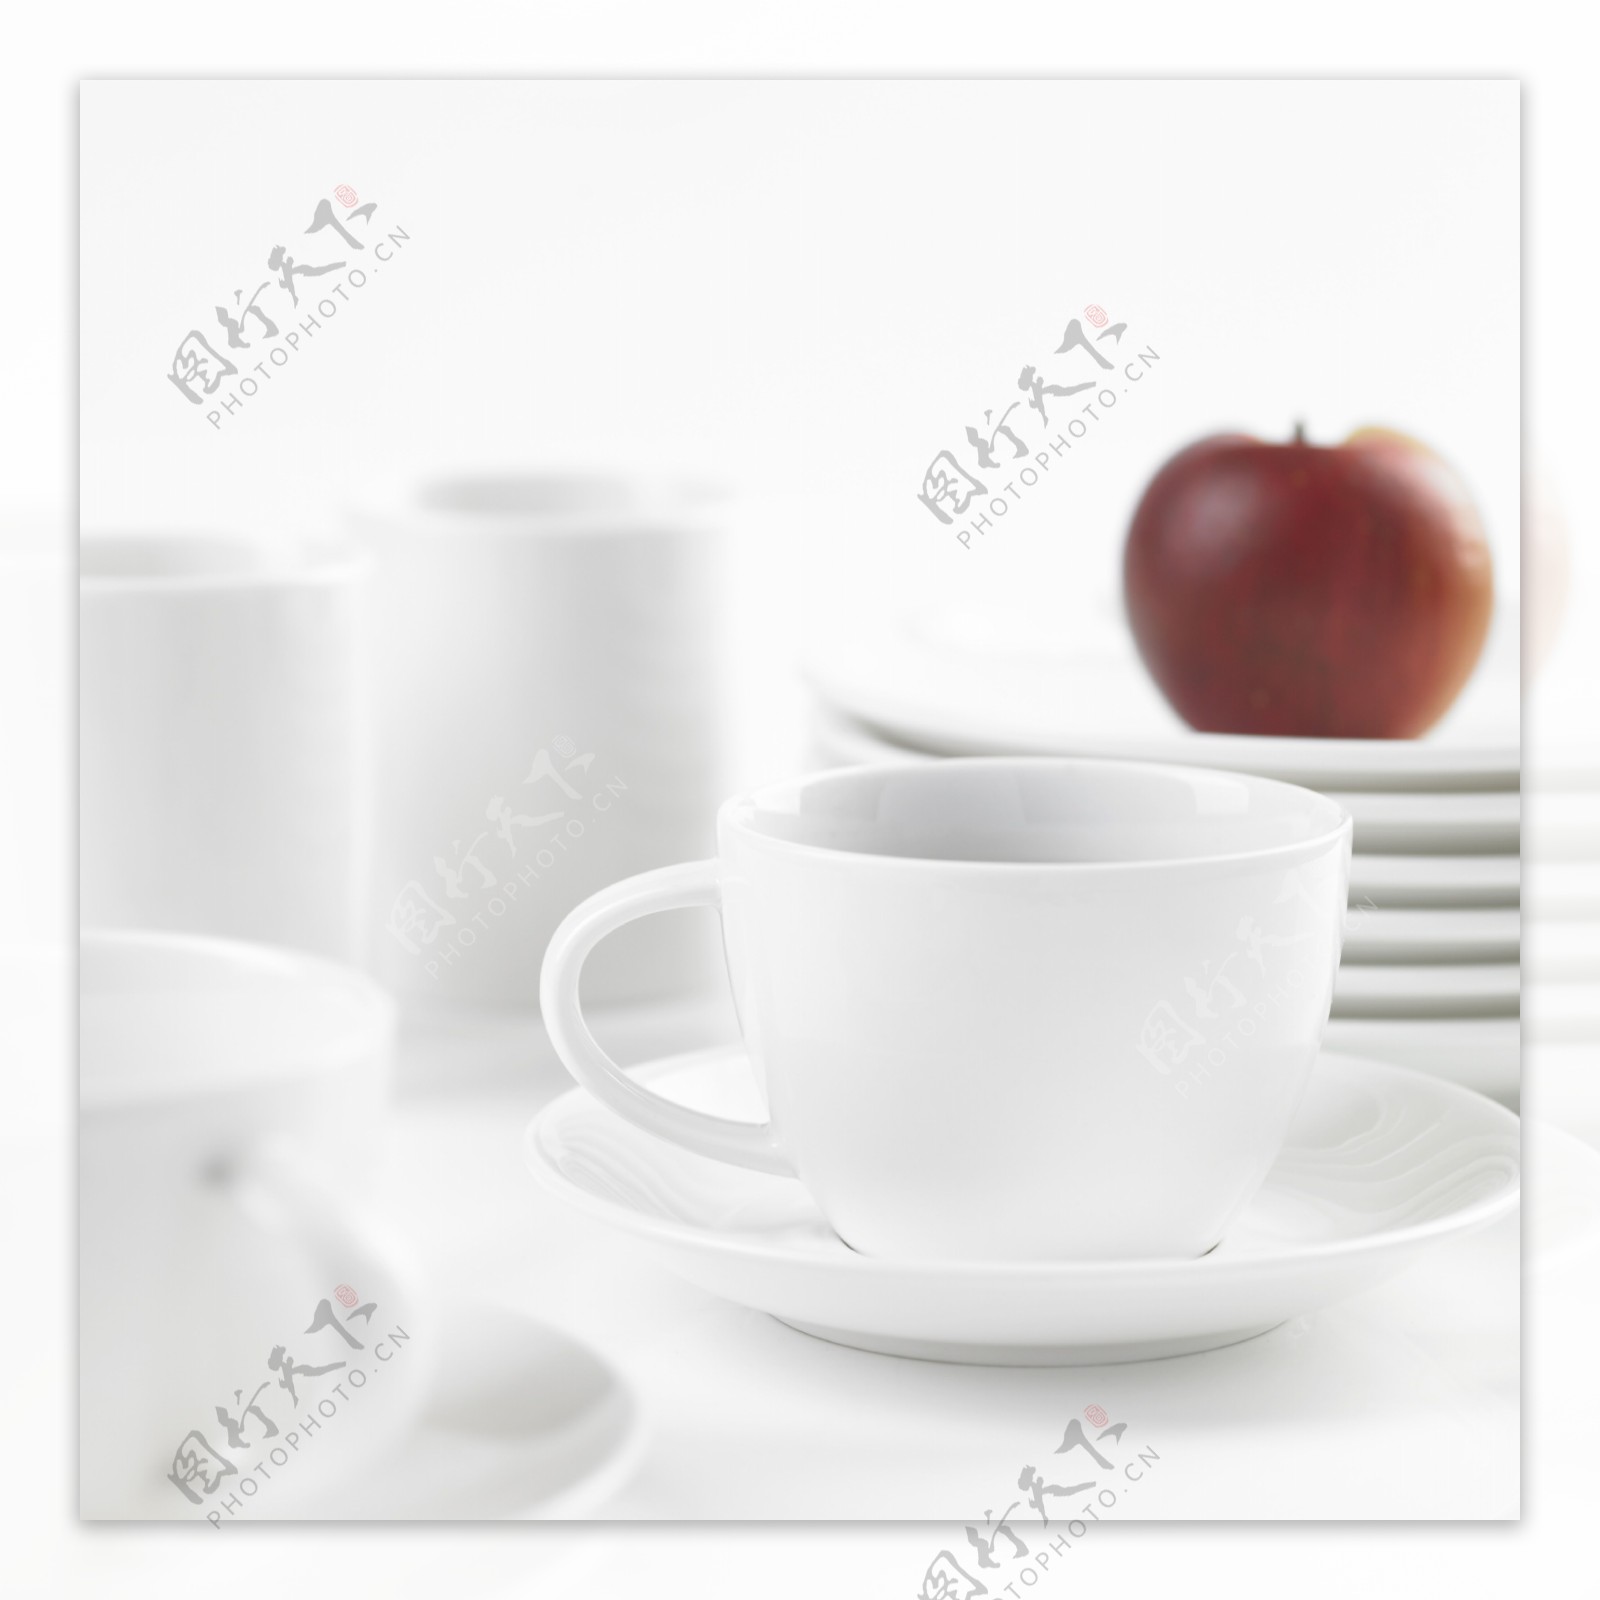 苹果与咖啡杯子特写图片